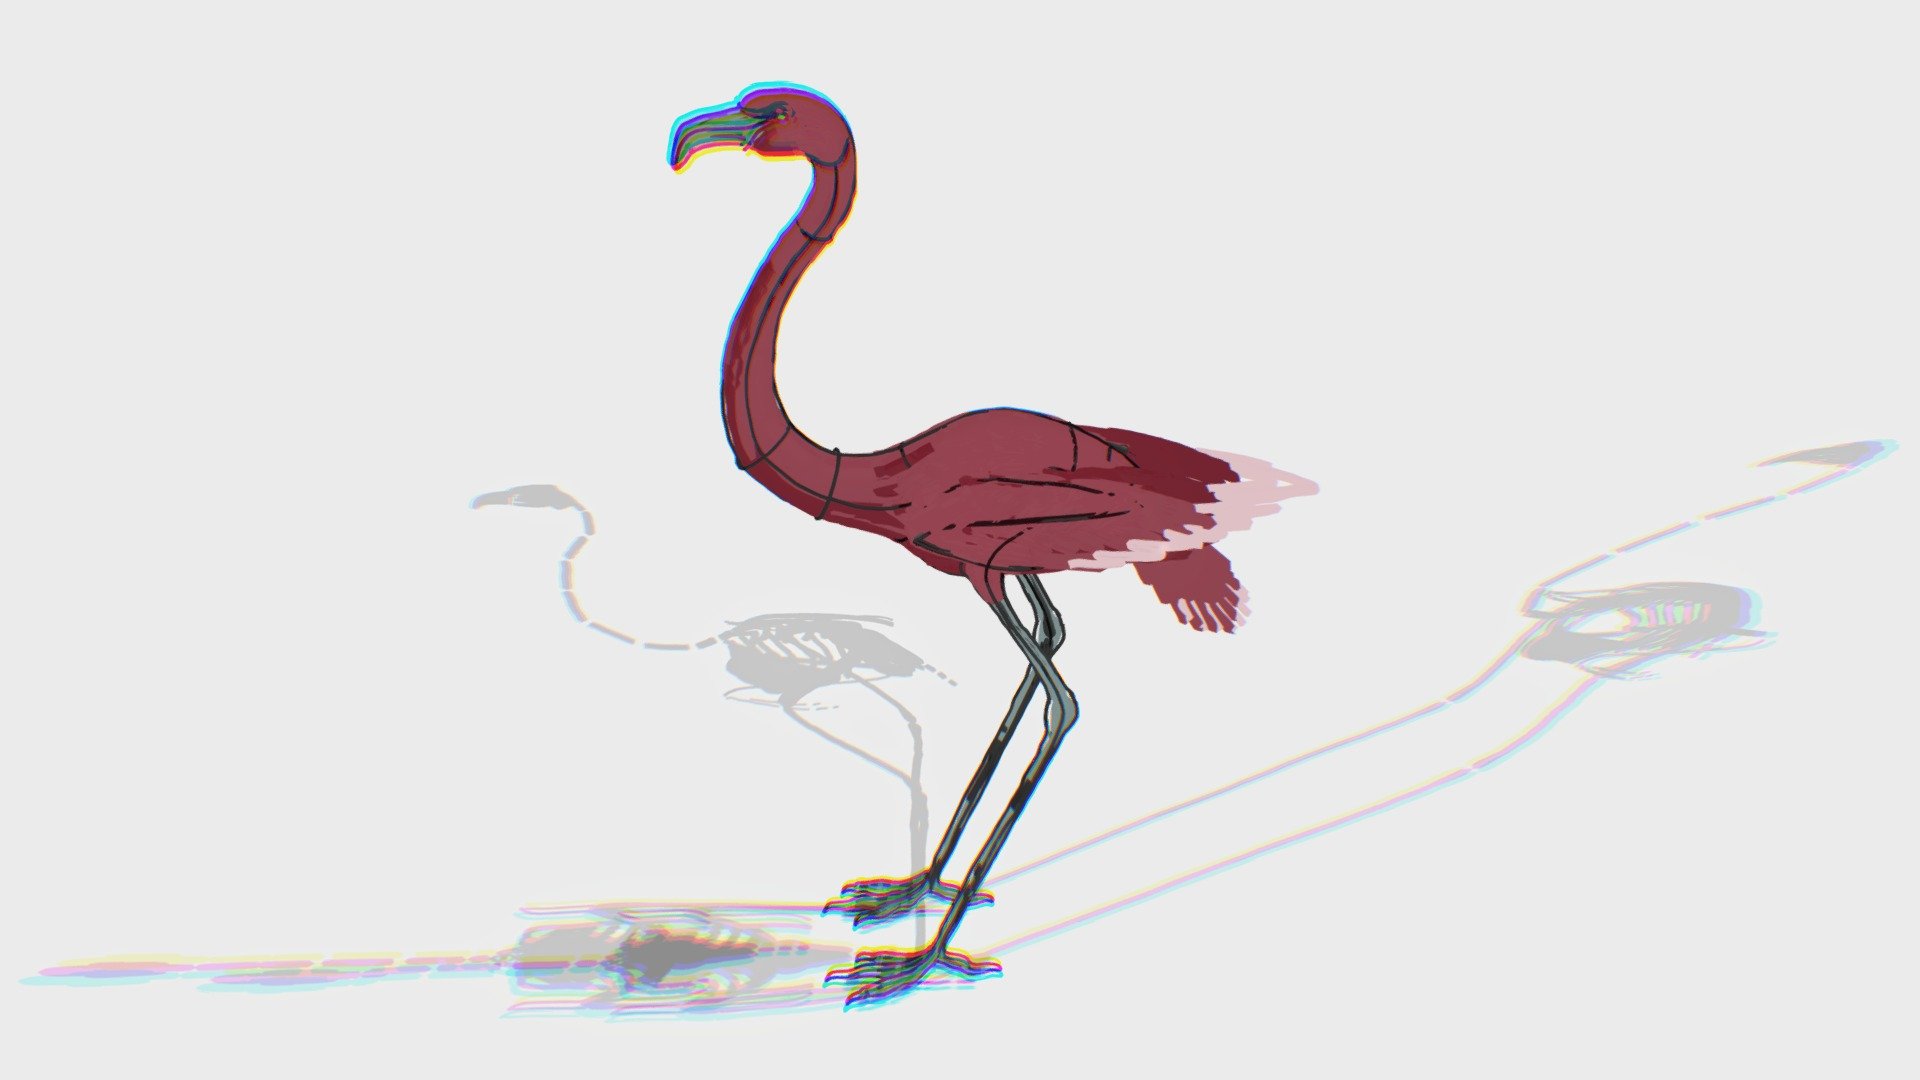 Flamingo and its shadows.... yi hi hi - Flamingo - 3D model by sy-kim 3d model